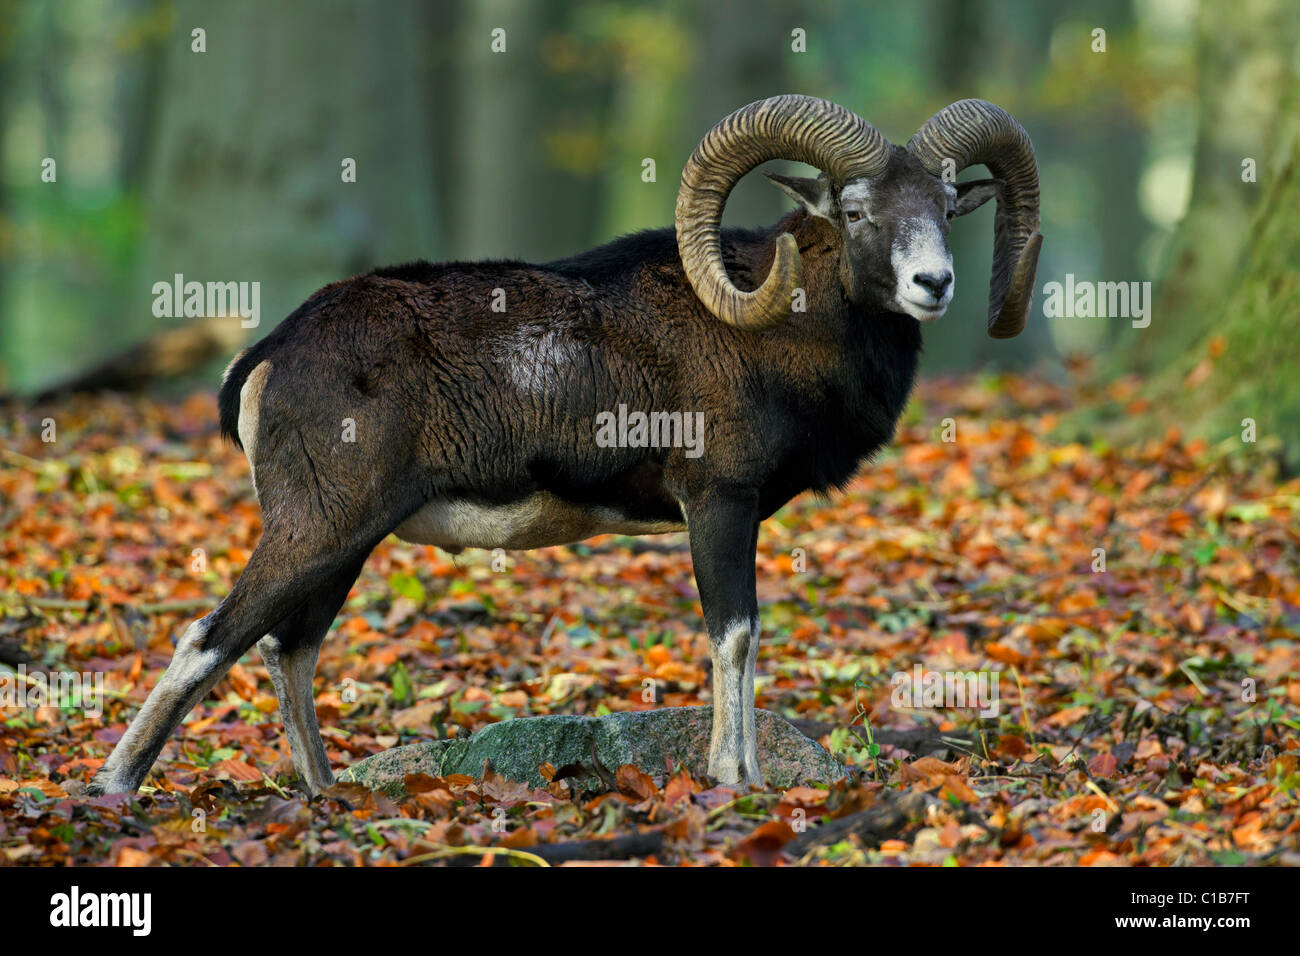 Mouflon (Ovis gmelini européenne / Ovis ammon musimon / Ovis orientalis musimon) ram en forêt en automne, Allemagne Banque D'Images